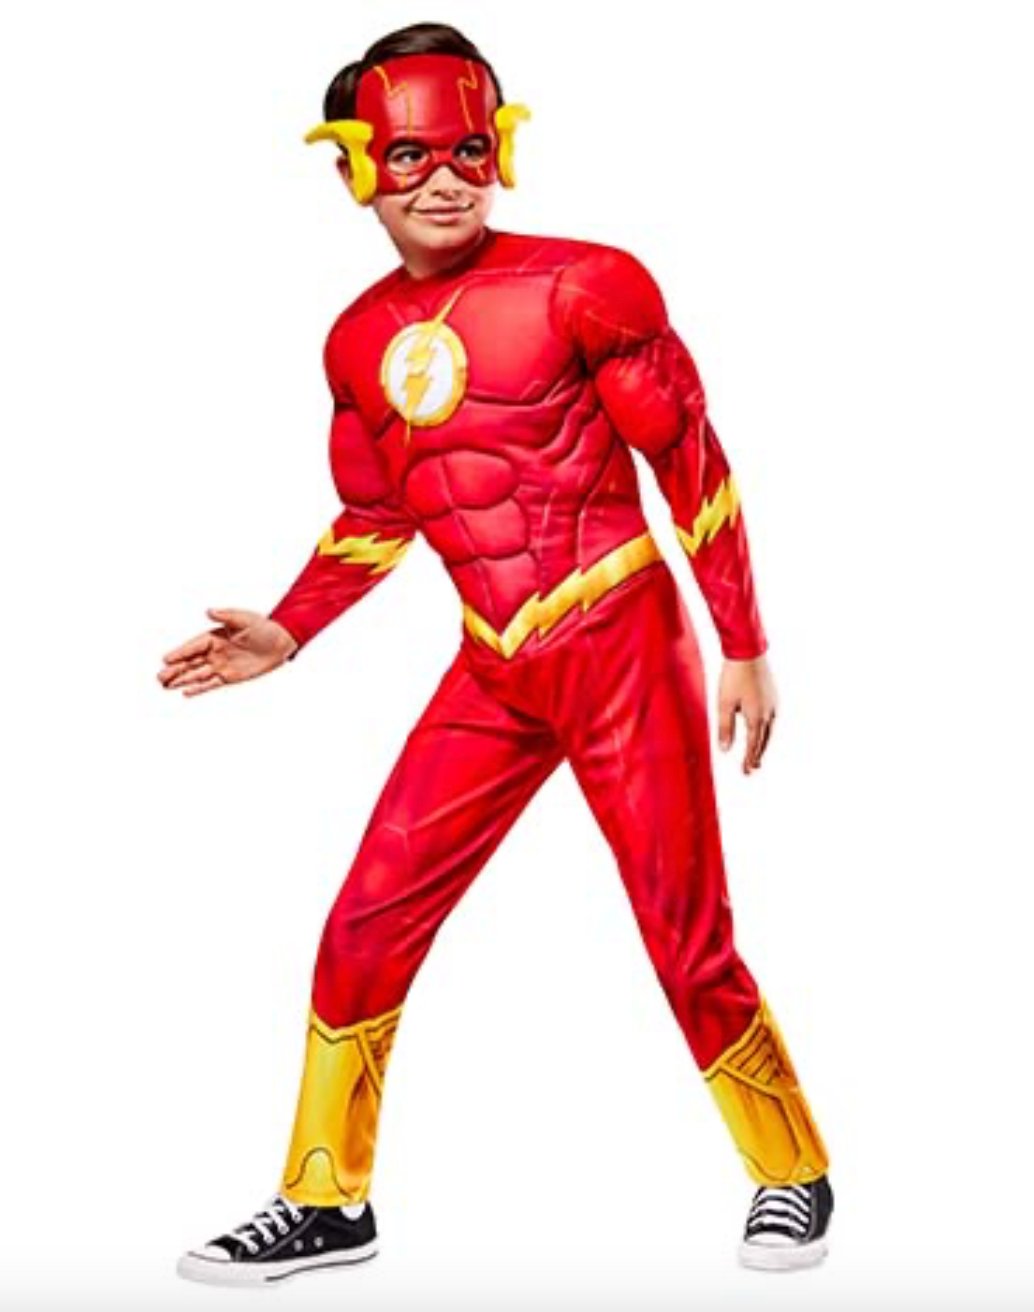 Costume Enfant - The Flash Party Shop